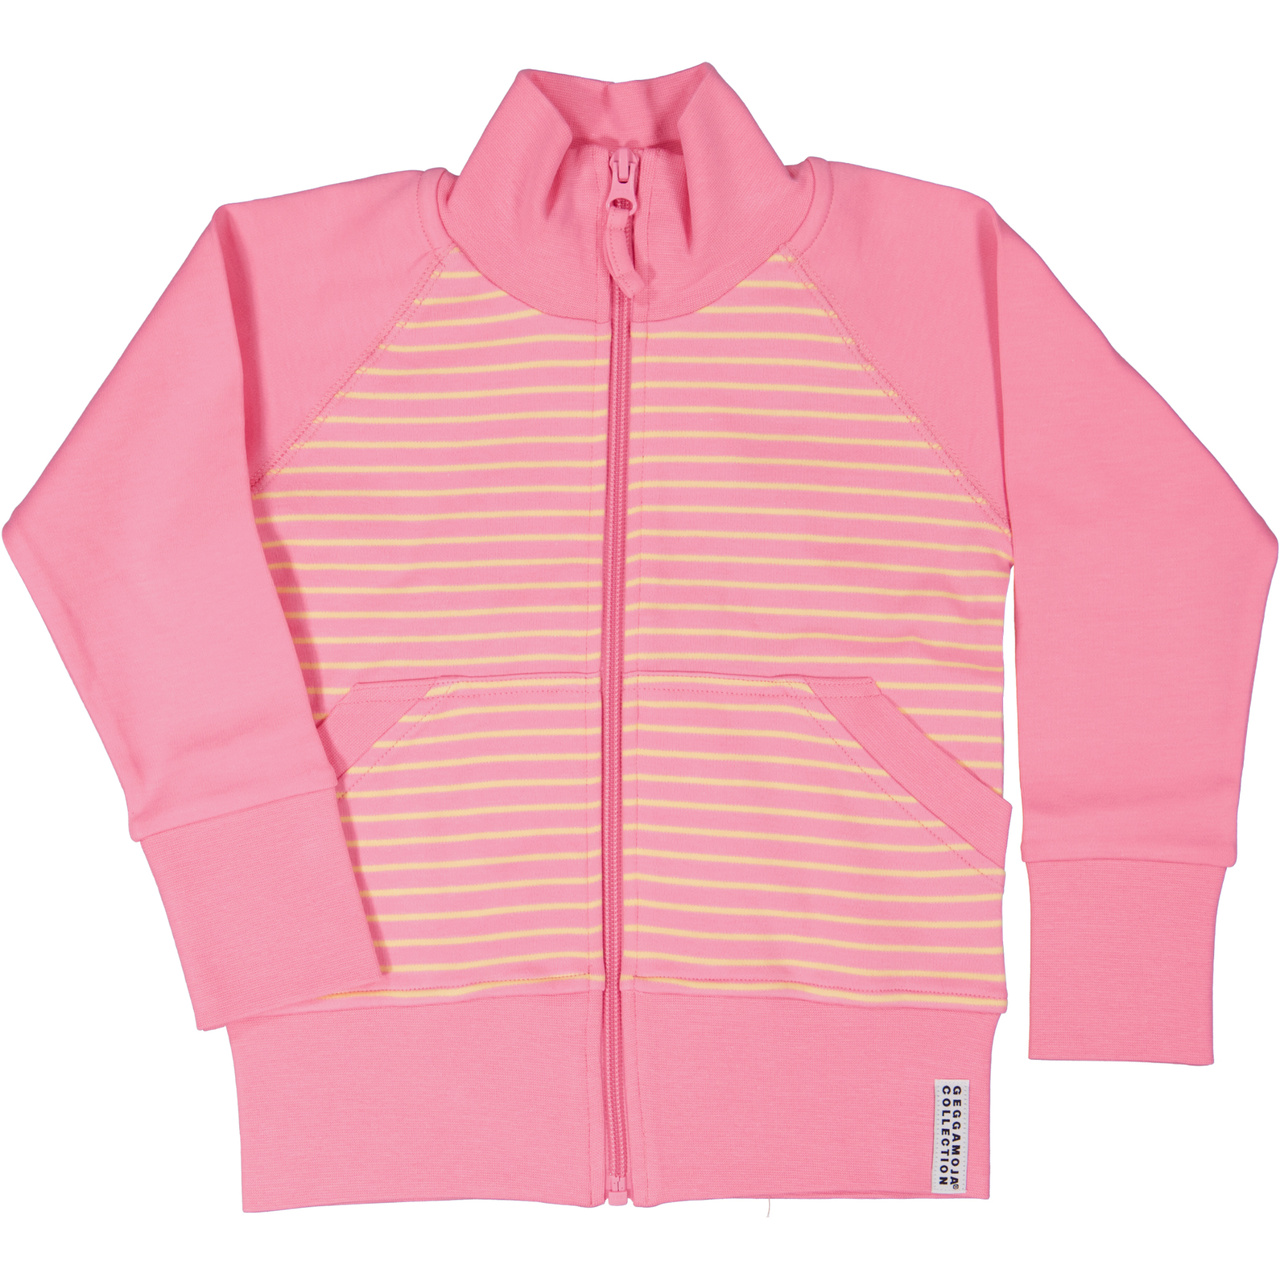 Zip sweater Pink/yellow  134/140